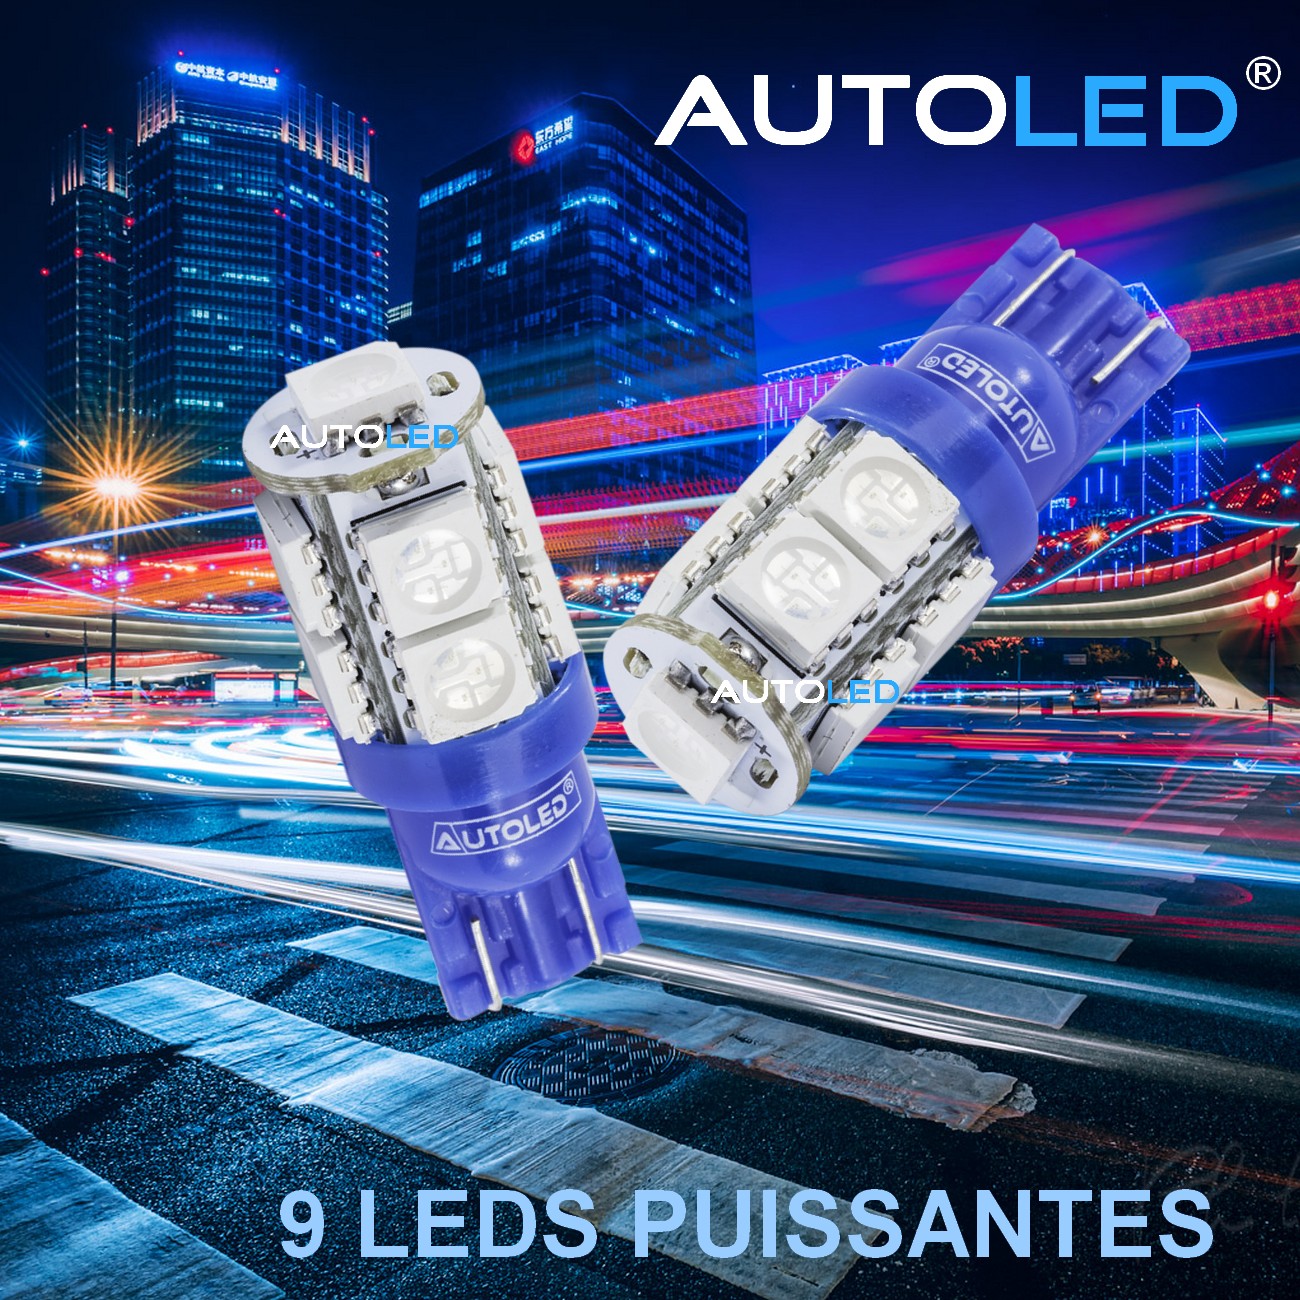 Ampoule W5W Bleu / LED T10 / ampoule LED bleu intérieur voiture